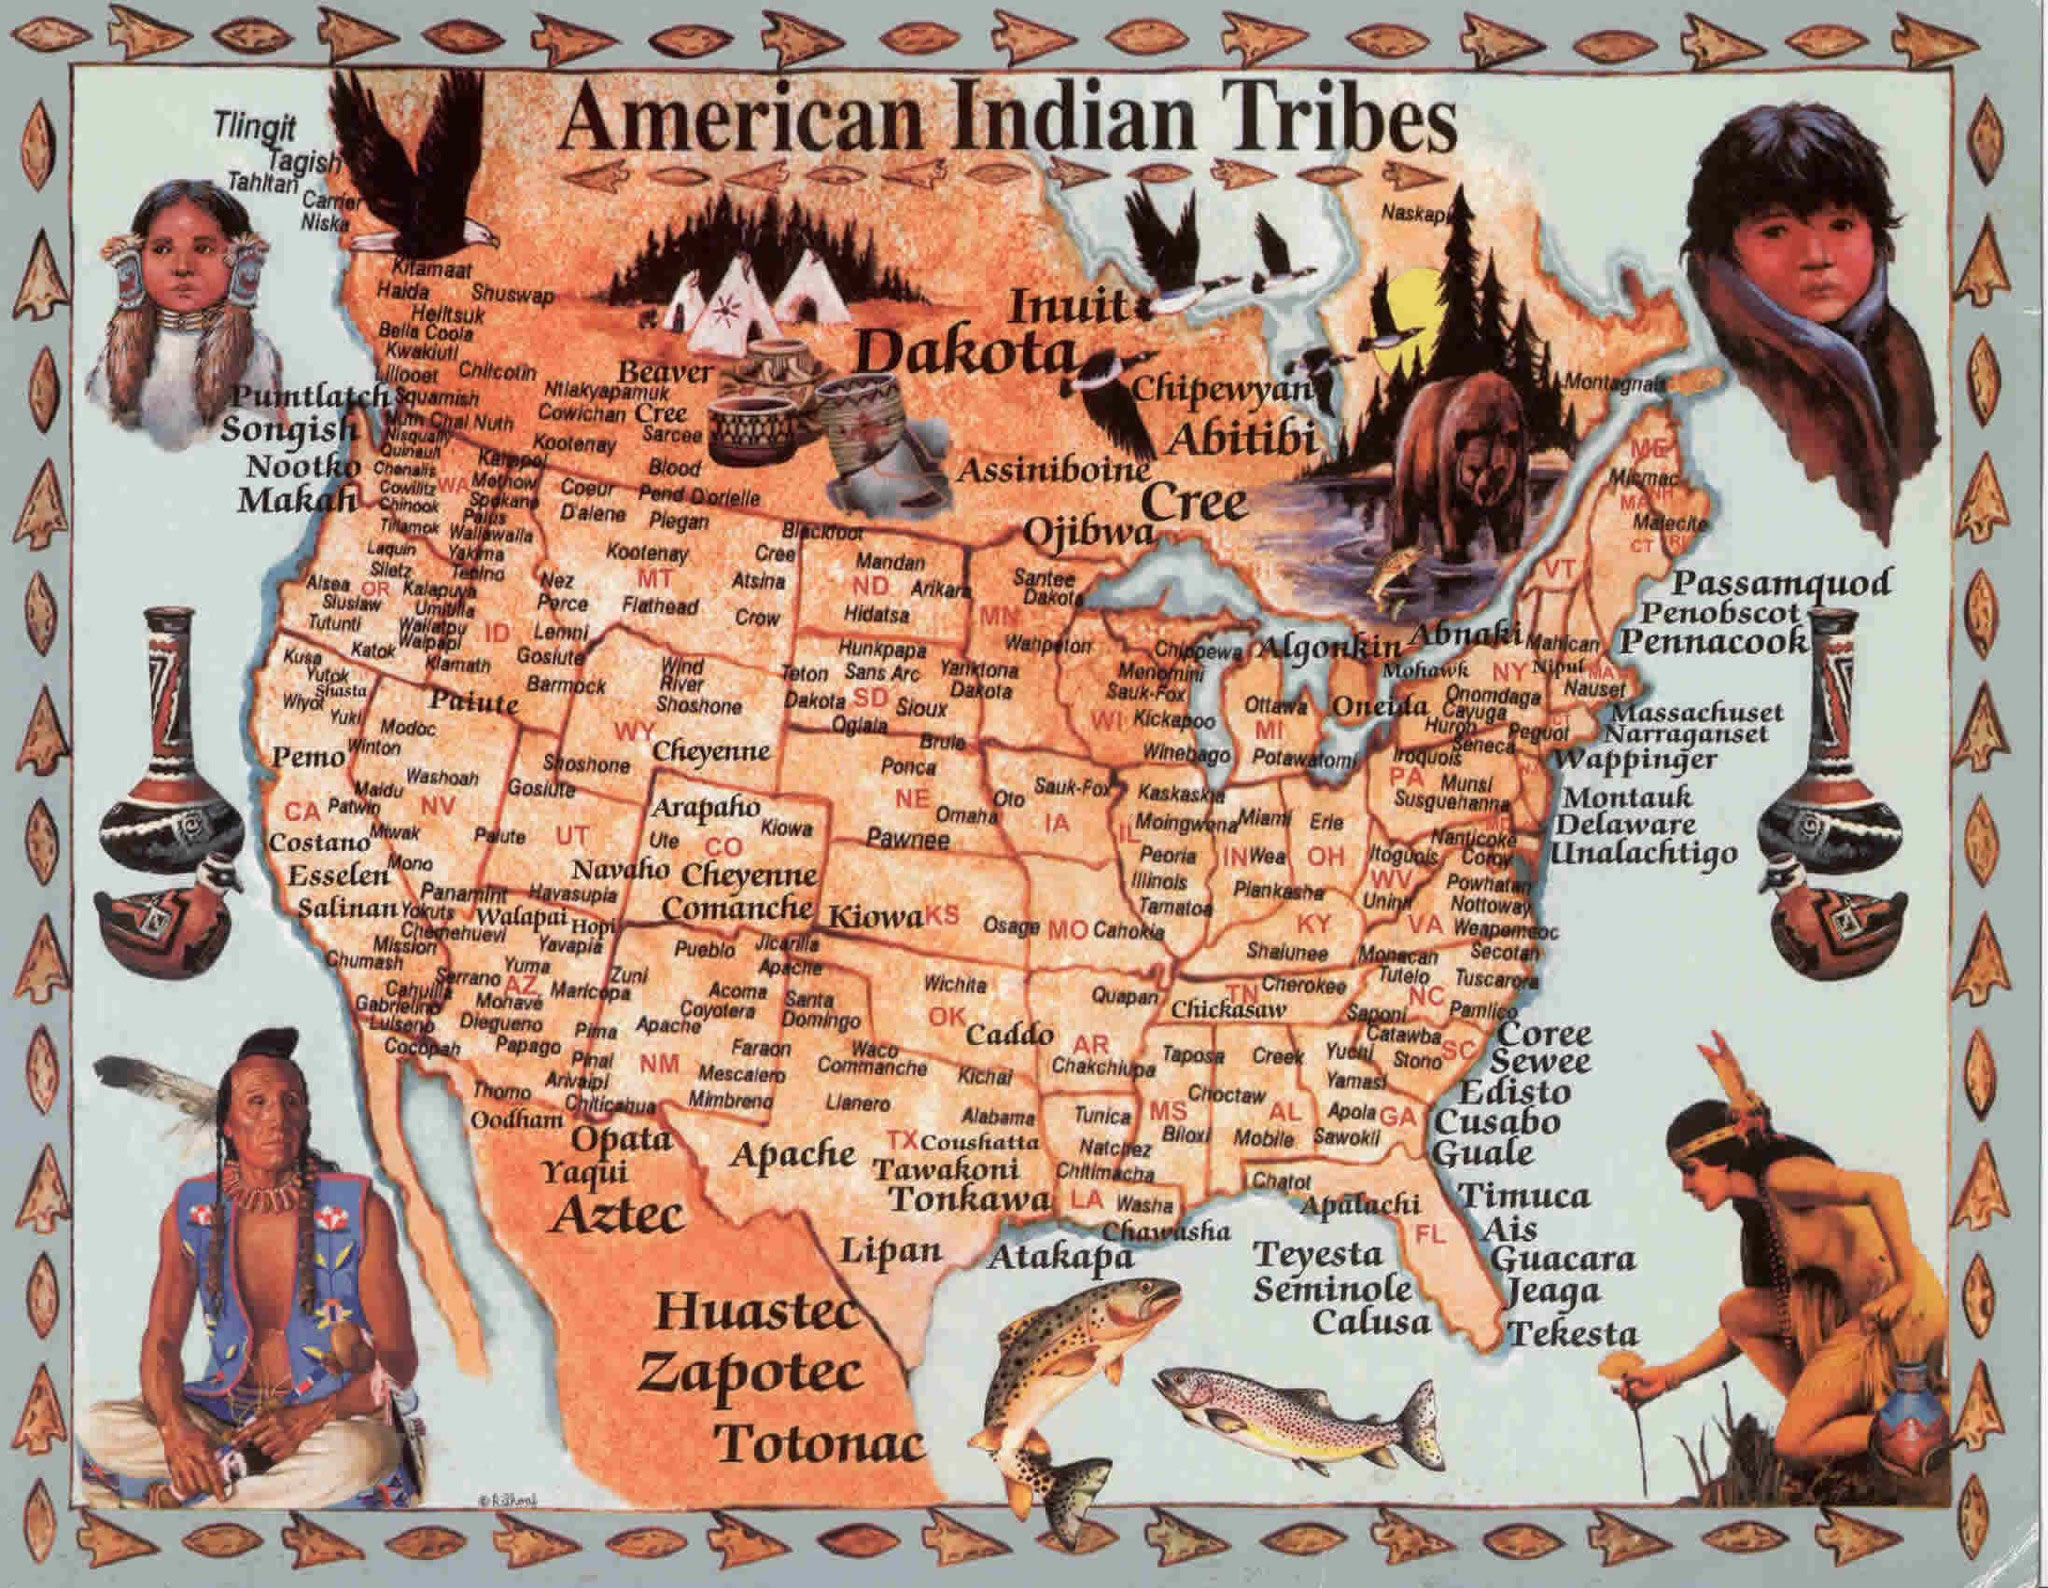 American Indian Tribes @ Ya-Native.com